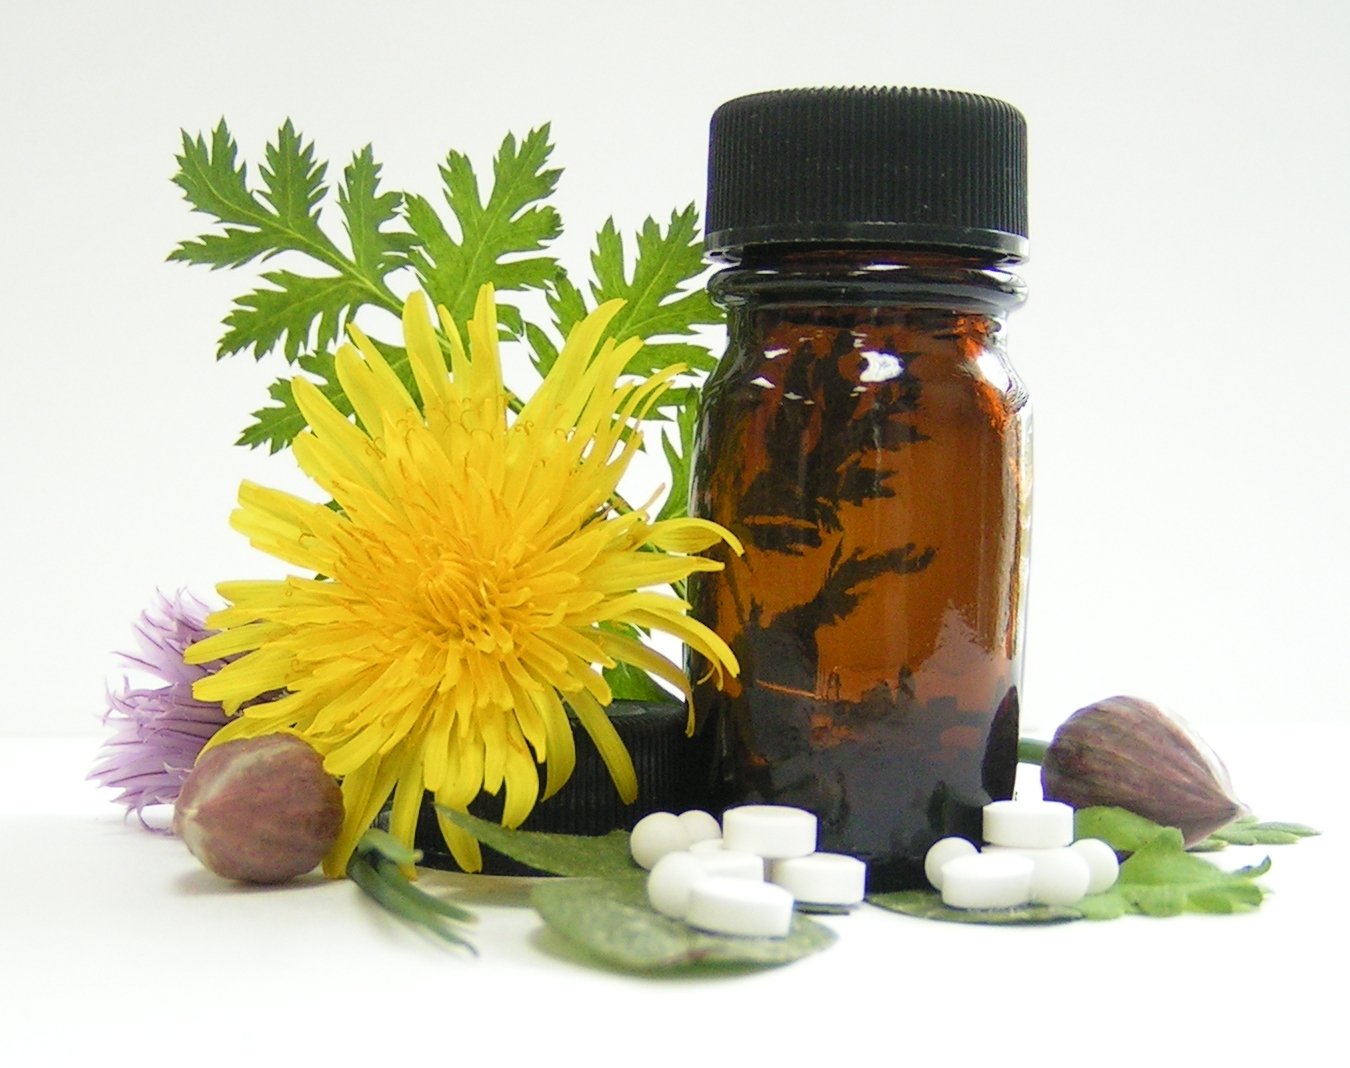 Homeopatija - natūralus gydymo būdas ar mitas?